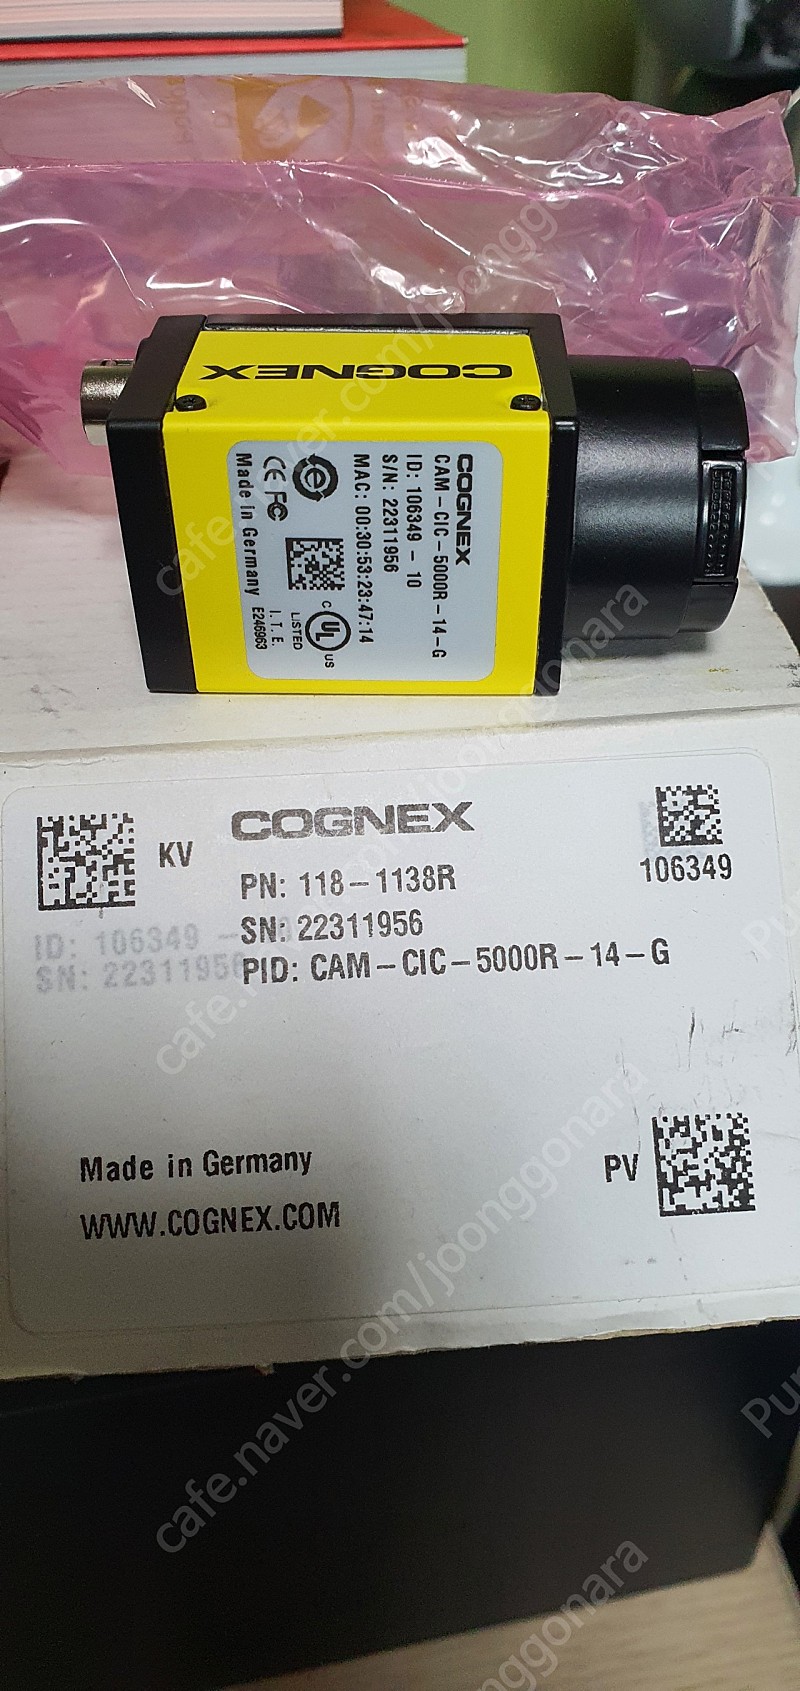 코그넥스 cognex 산업용 카메라 5M